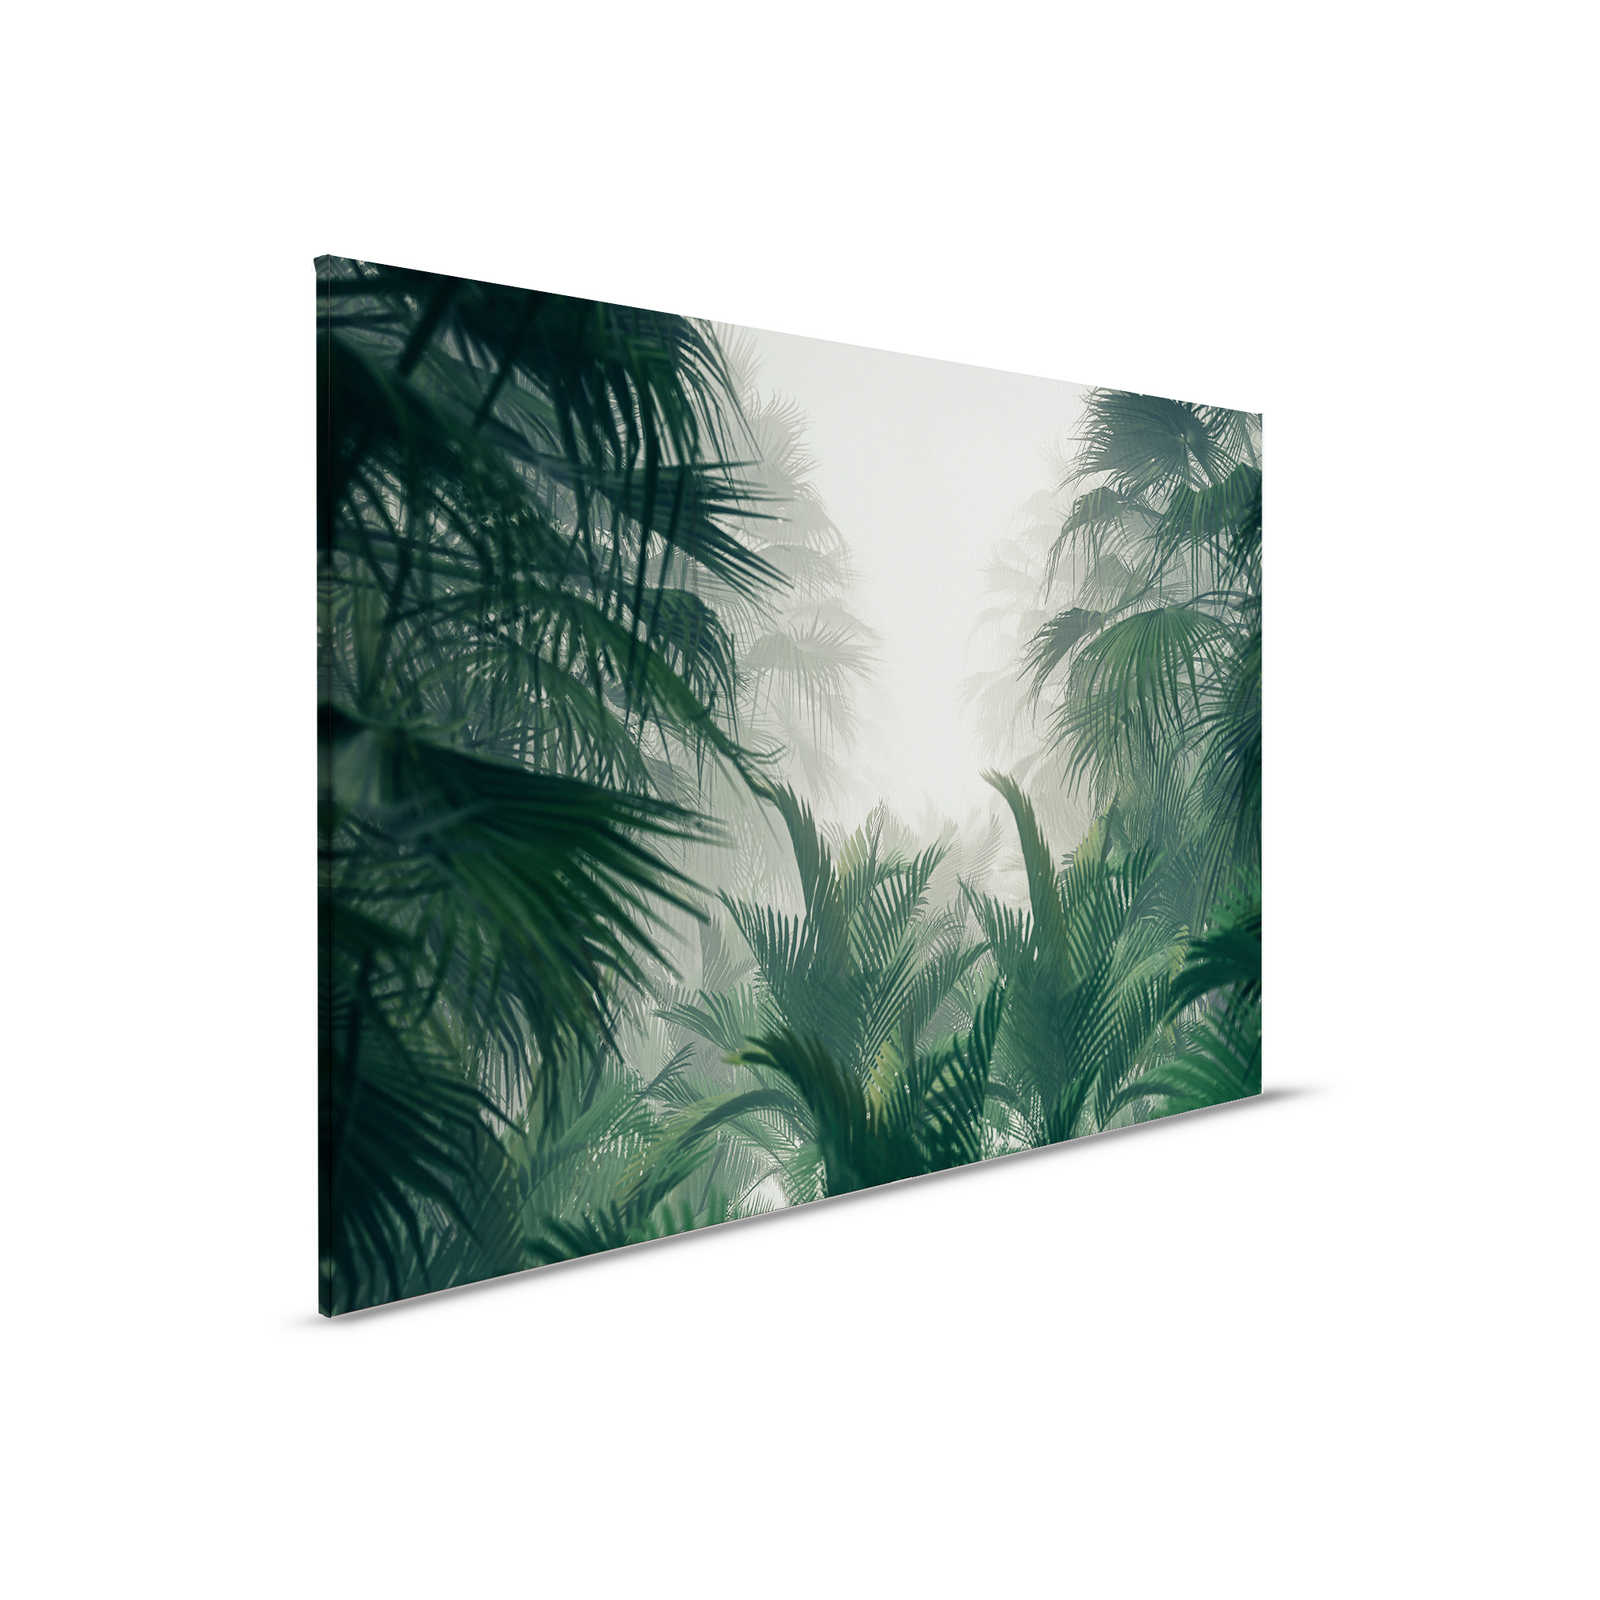 Pittura su tela con vista sulla giungla nella stagione piovosa - 0,90 m x 0,60 m
